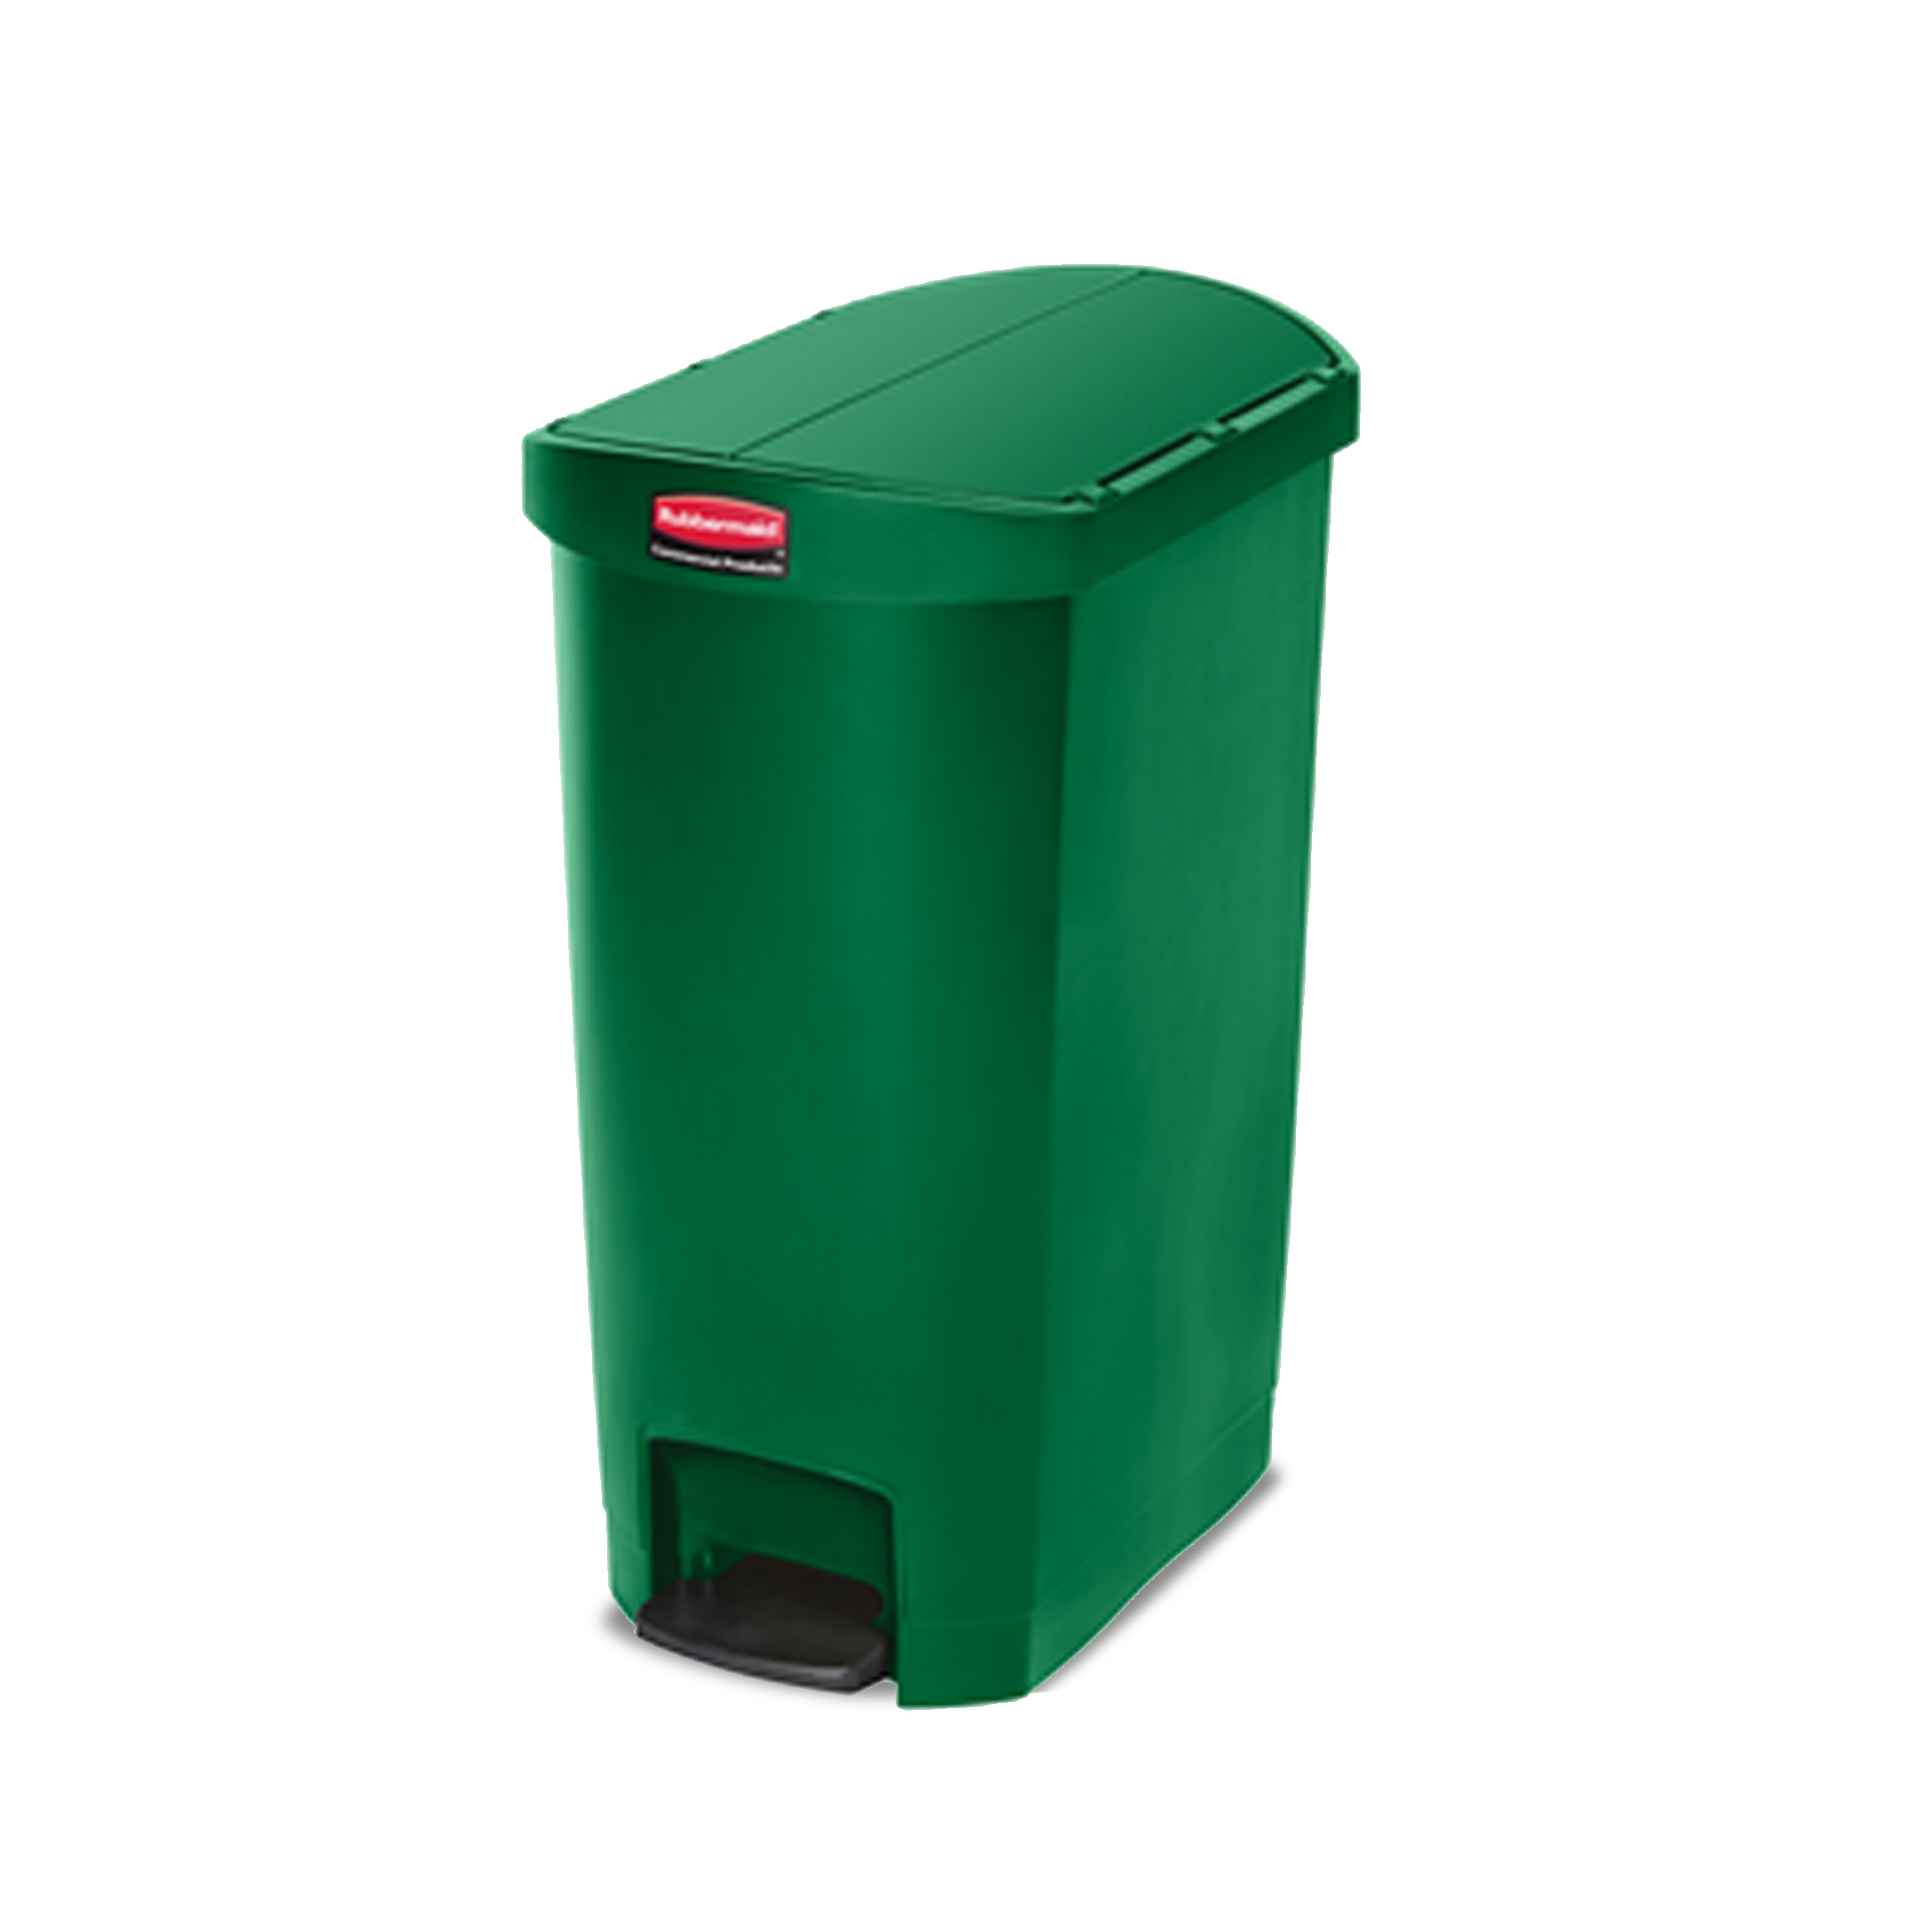 ถังขยะแบบเท้าเหยียบ ฝาถังเปิด 2 ด้าน Slim Jim® Step-On Container ขนาด 50 ลิตร สีเขียว